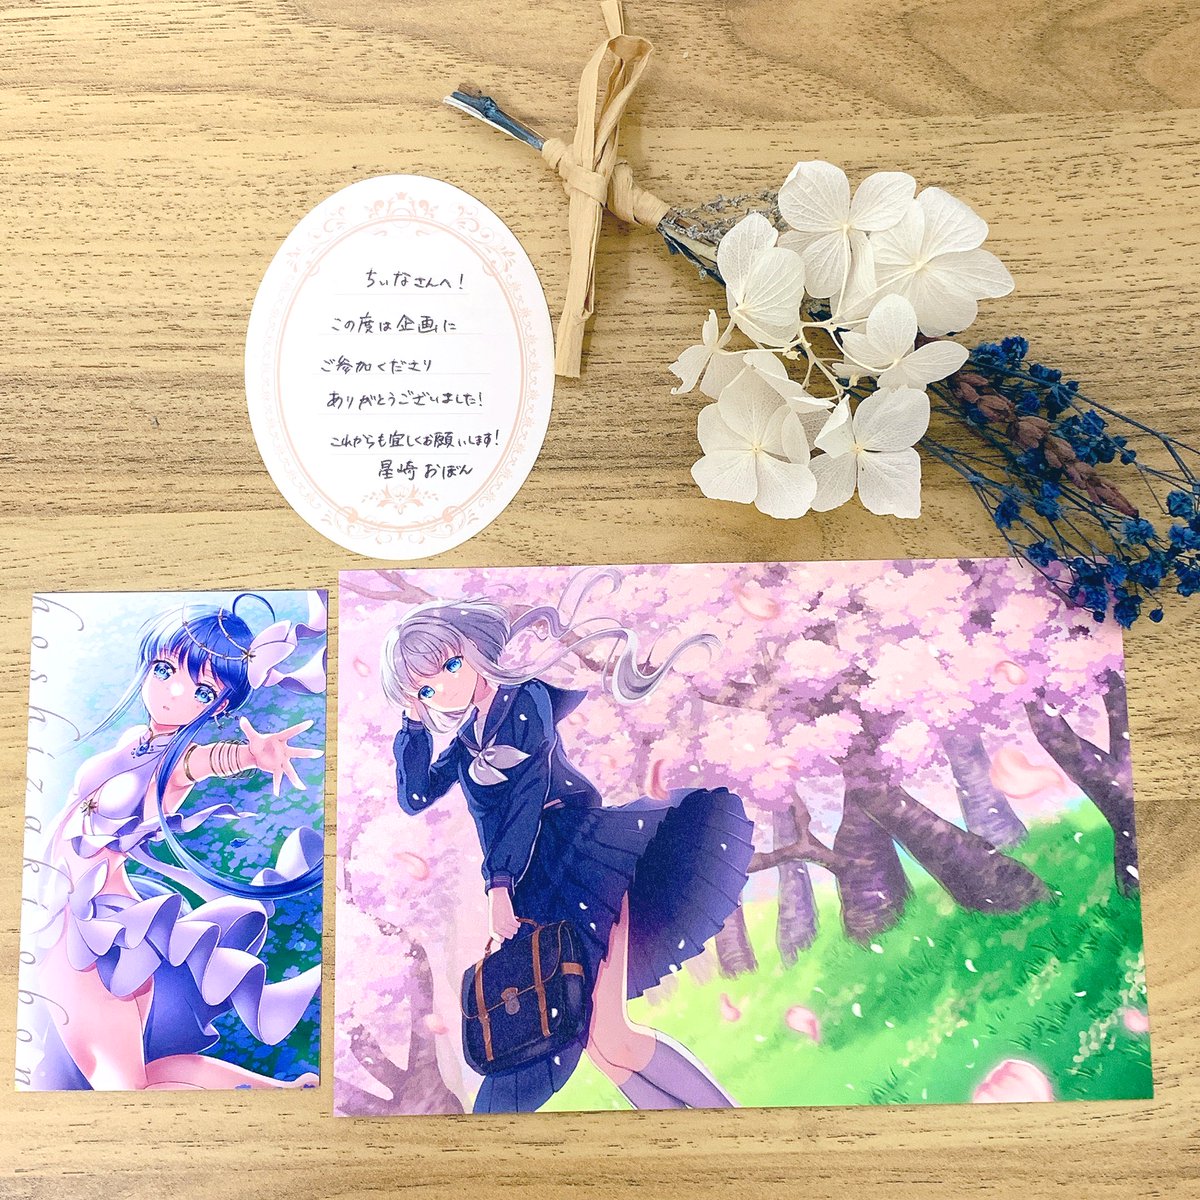 先日プレゼント企画にて星崎おぼん様(@obon_hoshizaki )から素敵なポストカードと名刺を頂きました✨メッセージカードも添えてくださり嬉しかったです。
素敵な企画に参加させてくださりありがとうございました😊